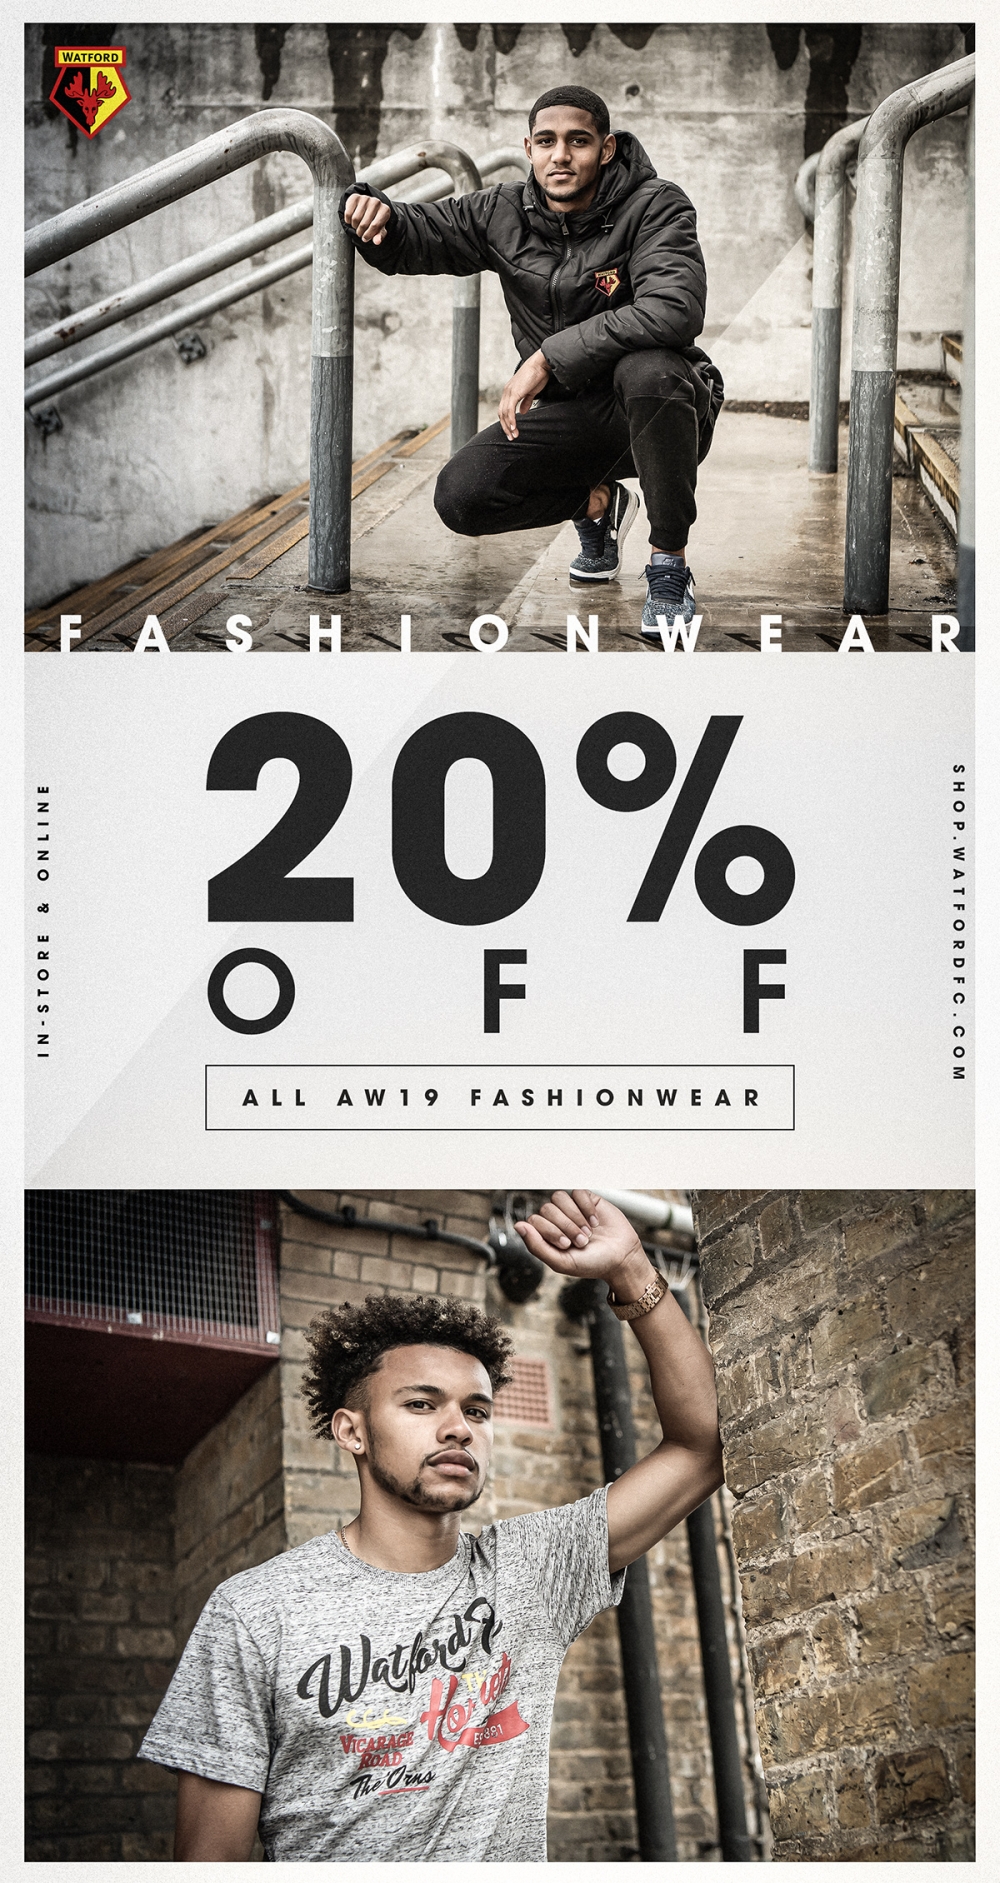 20% off all fashion-wear items 